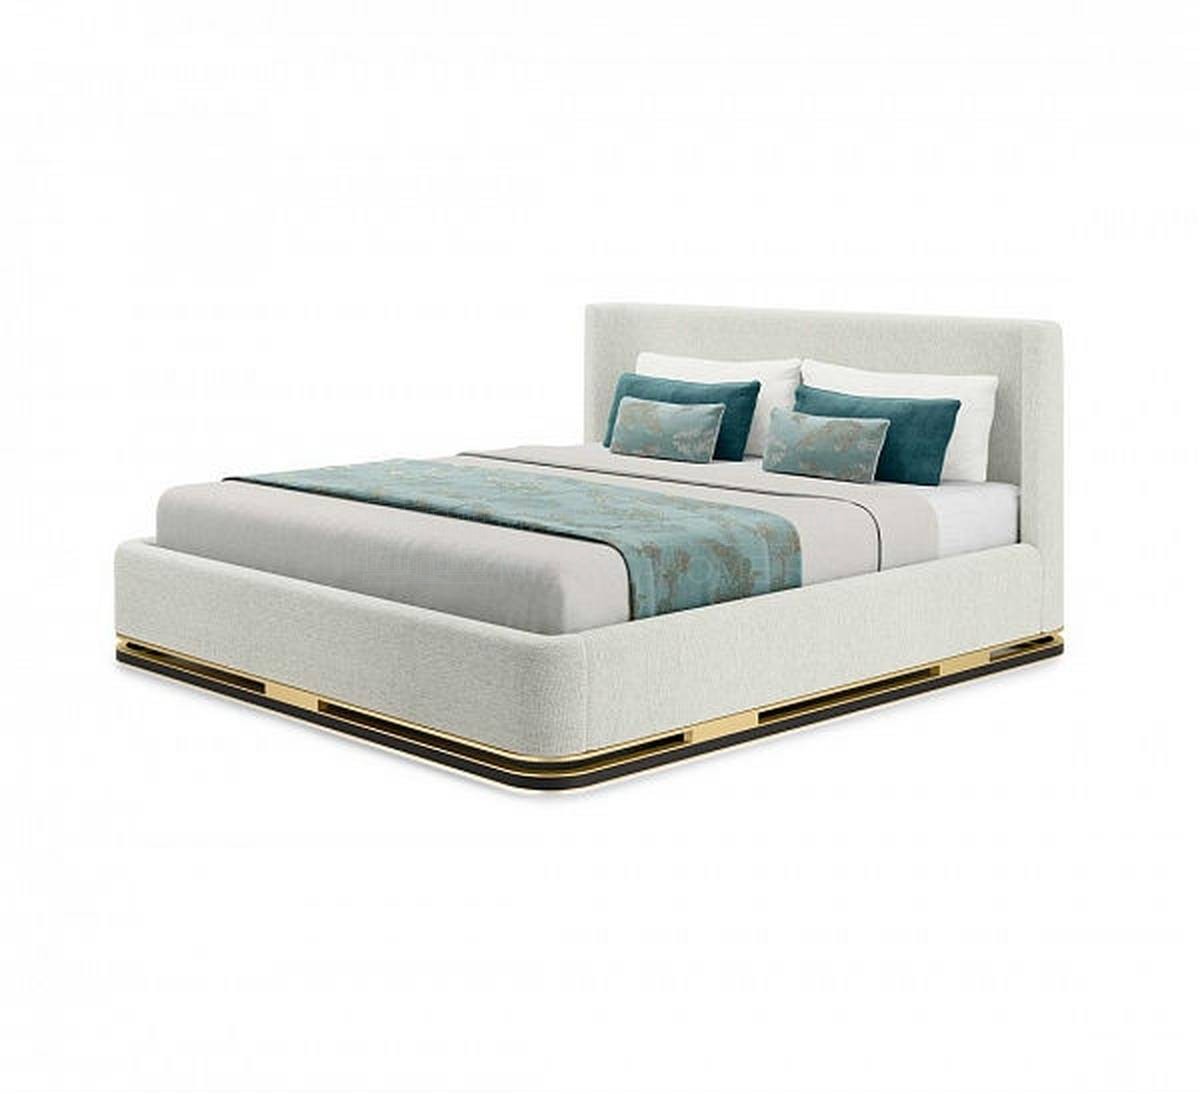 Кровать с мягким изголовьем Ashi bed из Португалии фабрики FRATO